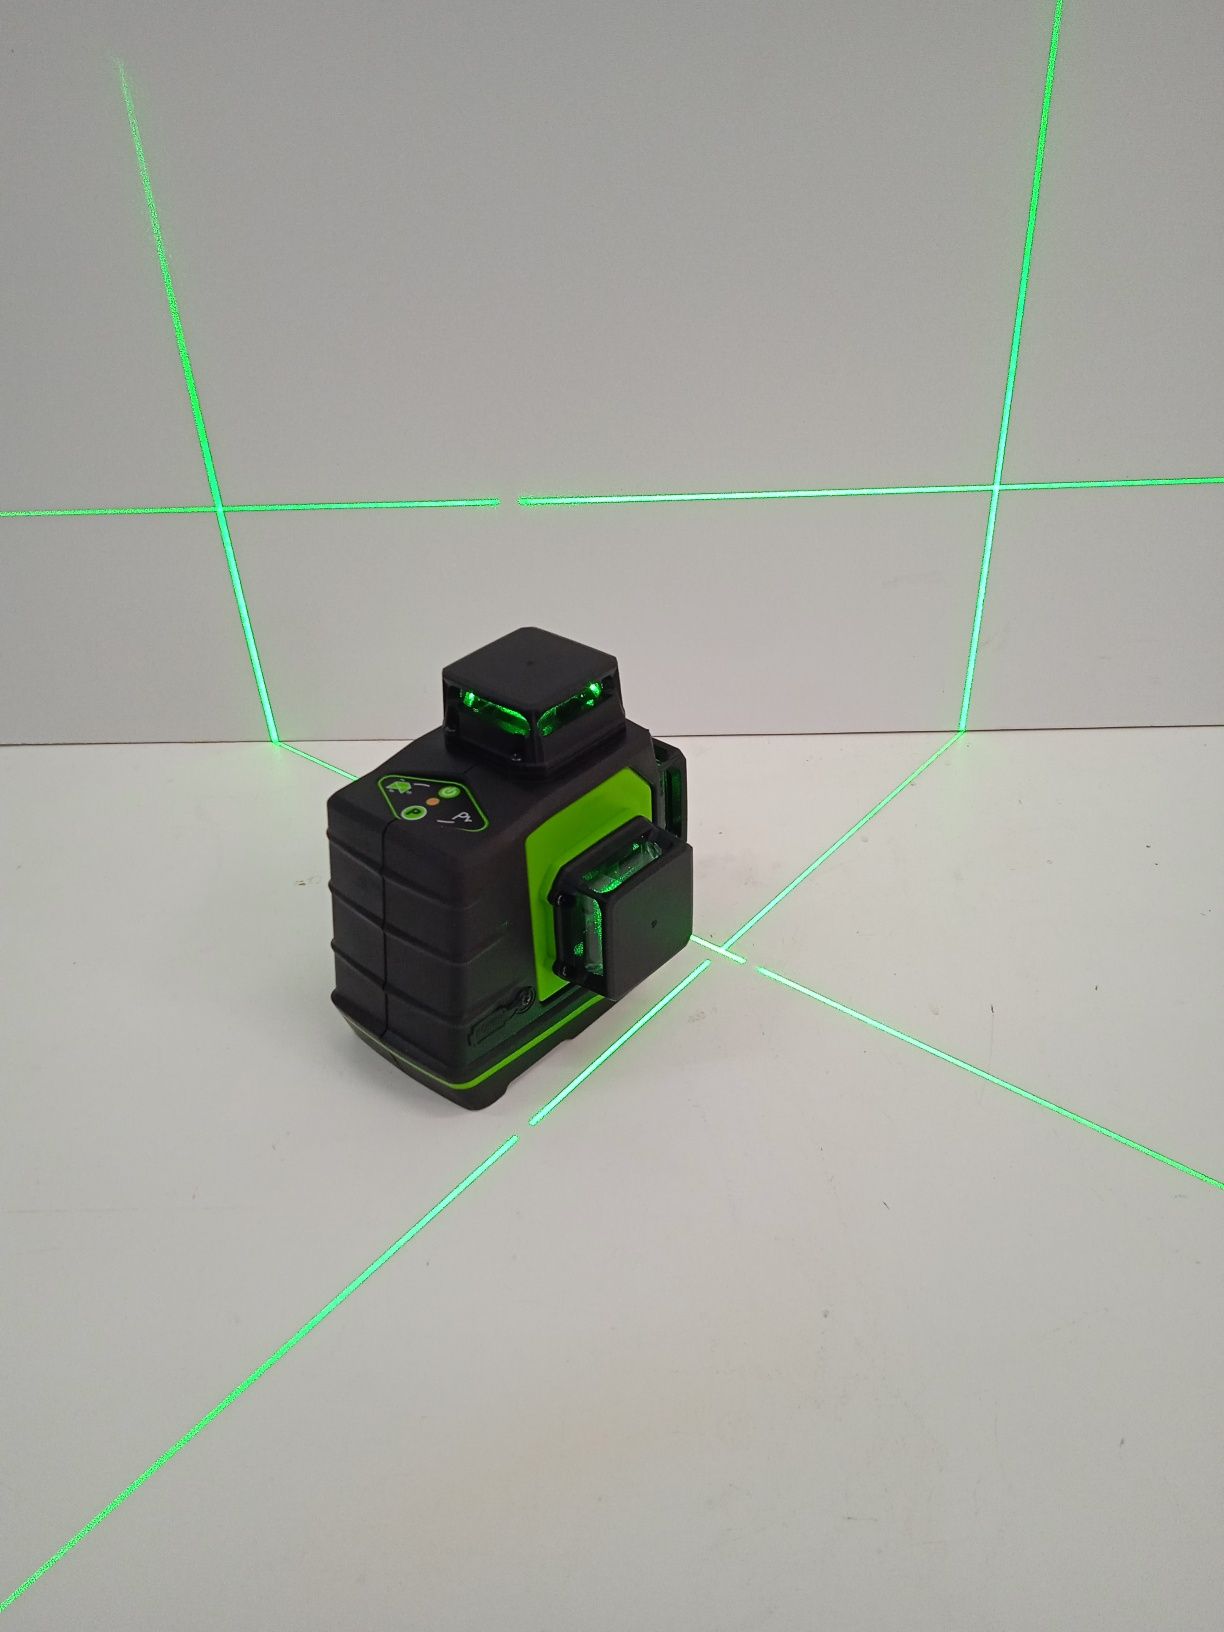 Elma Laser X 360 Laser Płaszczyznowy Poziomica Laserowa Zielony 3x360